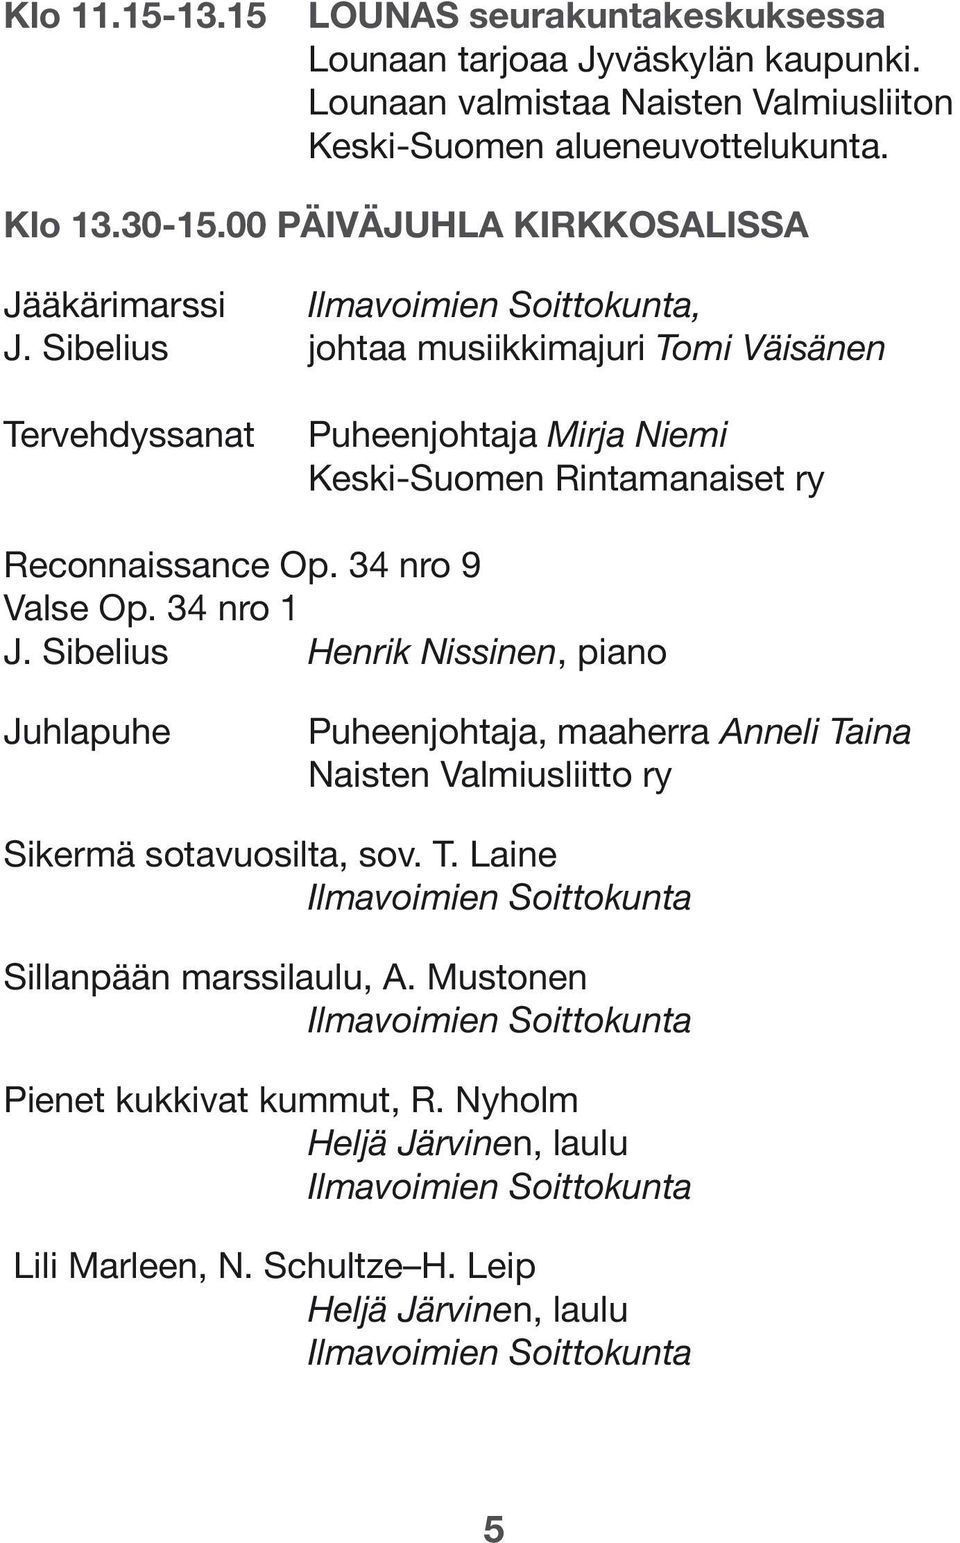 Sibelius johtaa musiikkimajuri Tomi Väisänen Tervehdyssanat Puheenjohtaja Mirja Niemi Keski-Suomen Rintamanaiset ry Reconnaissance Op. 34 nro 9 Valse Op. 34 nro 1 J.